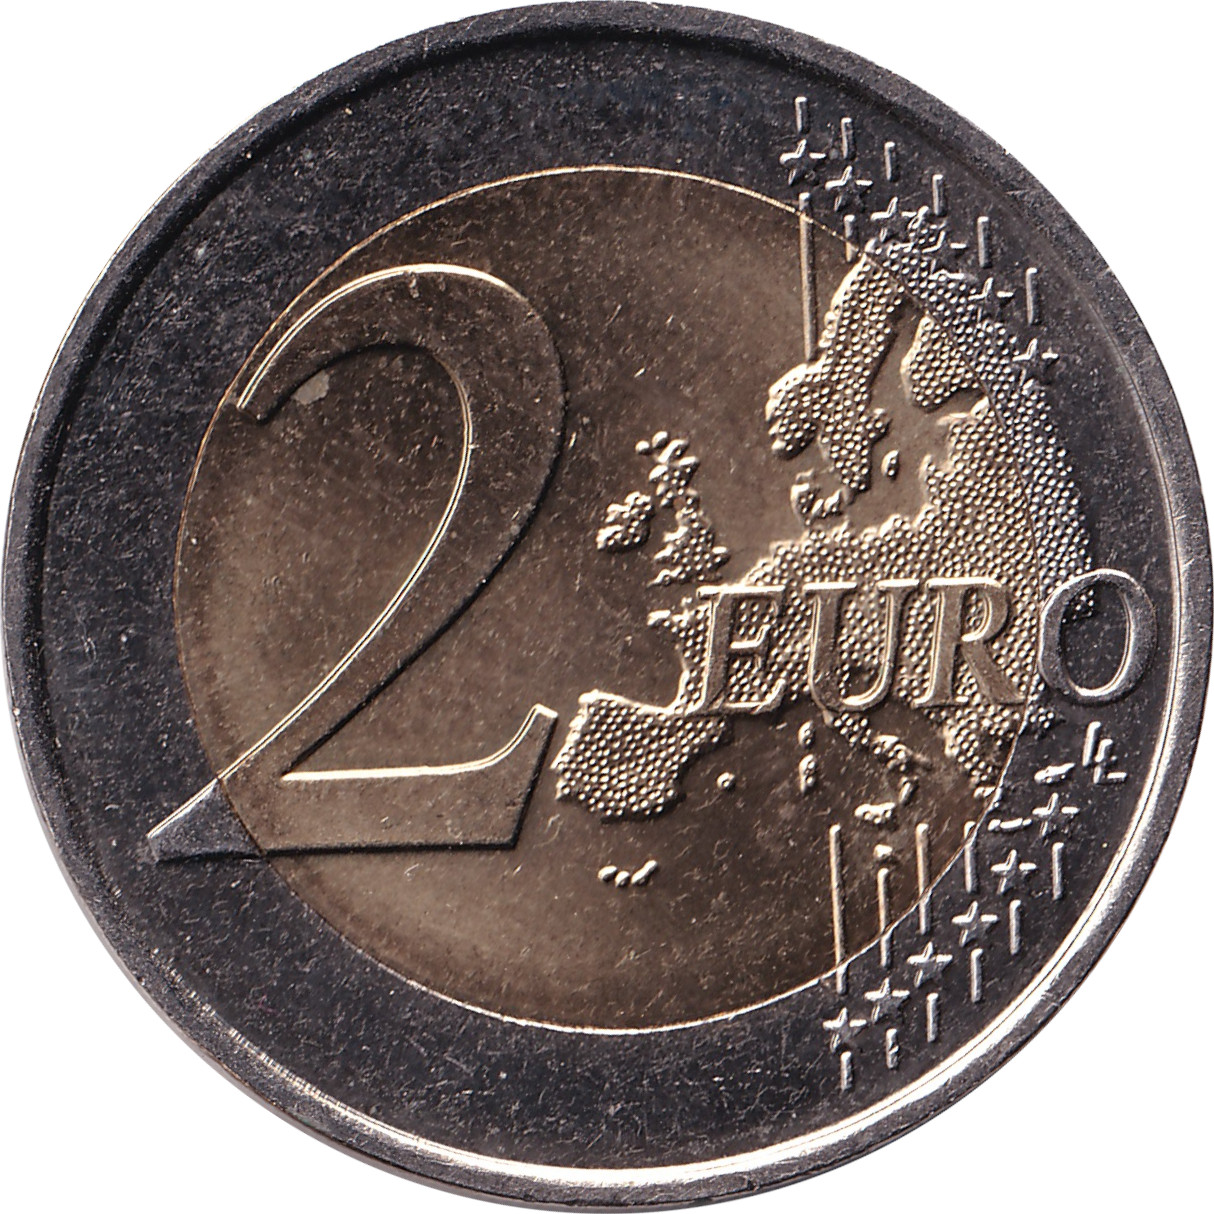 2 euro - UNICEF